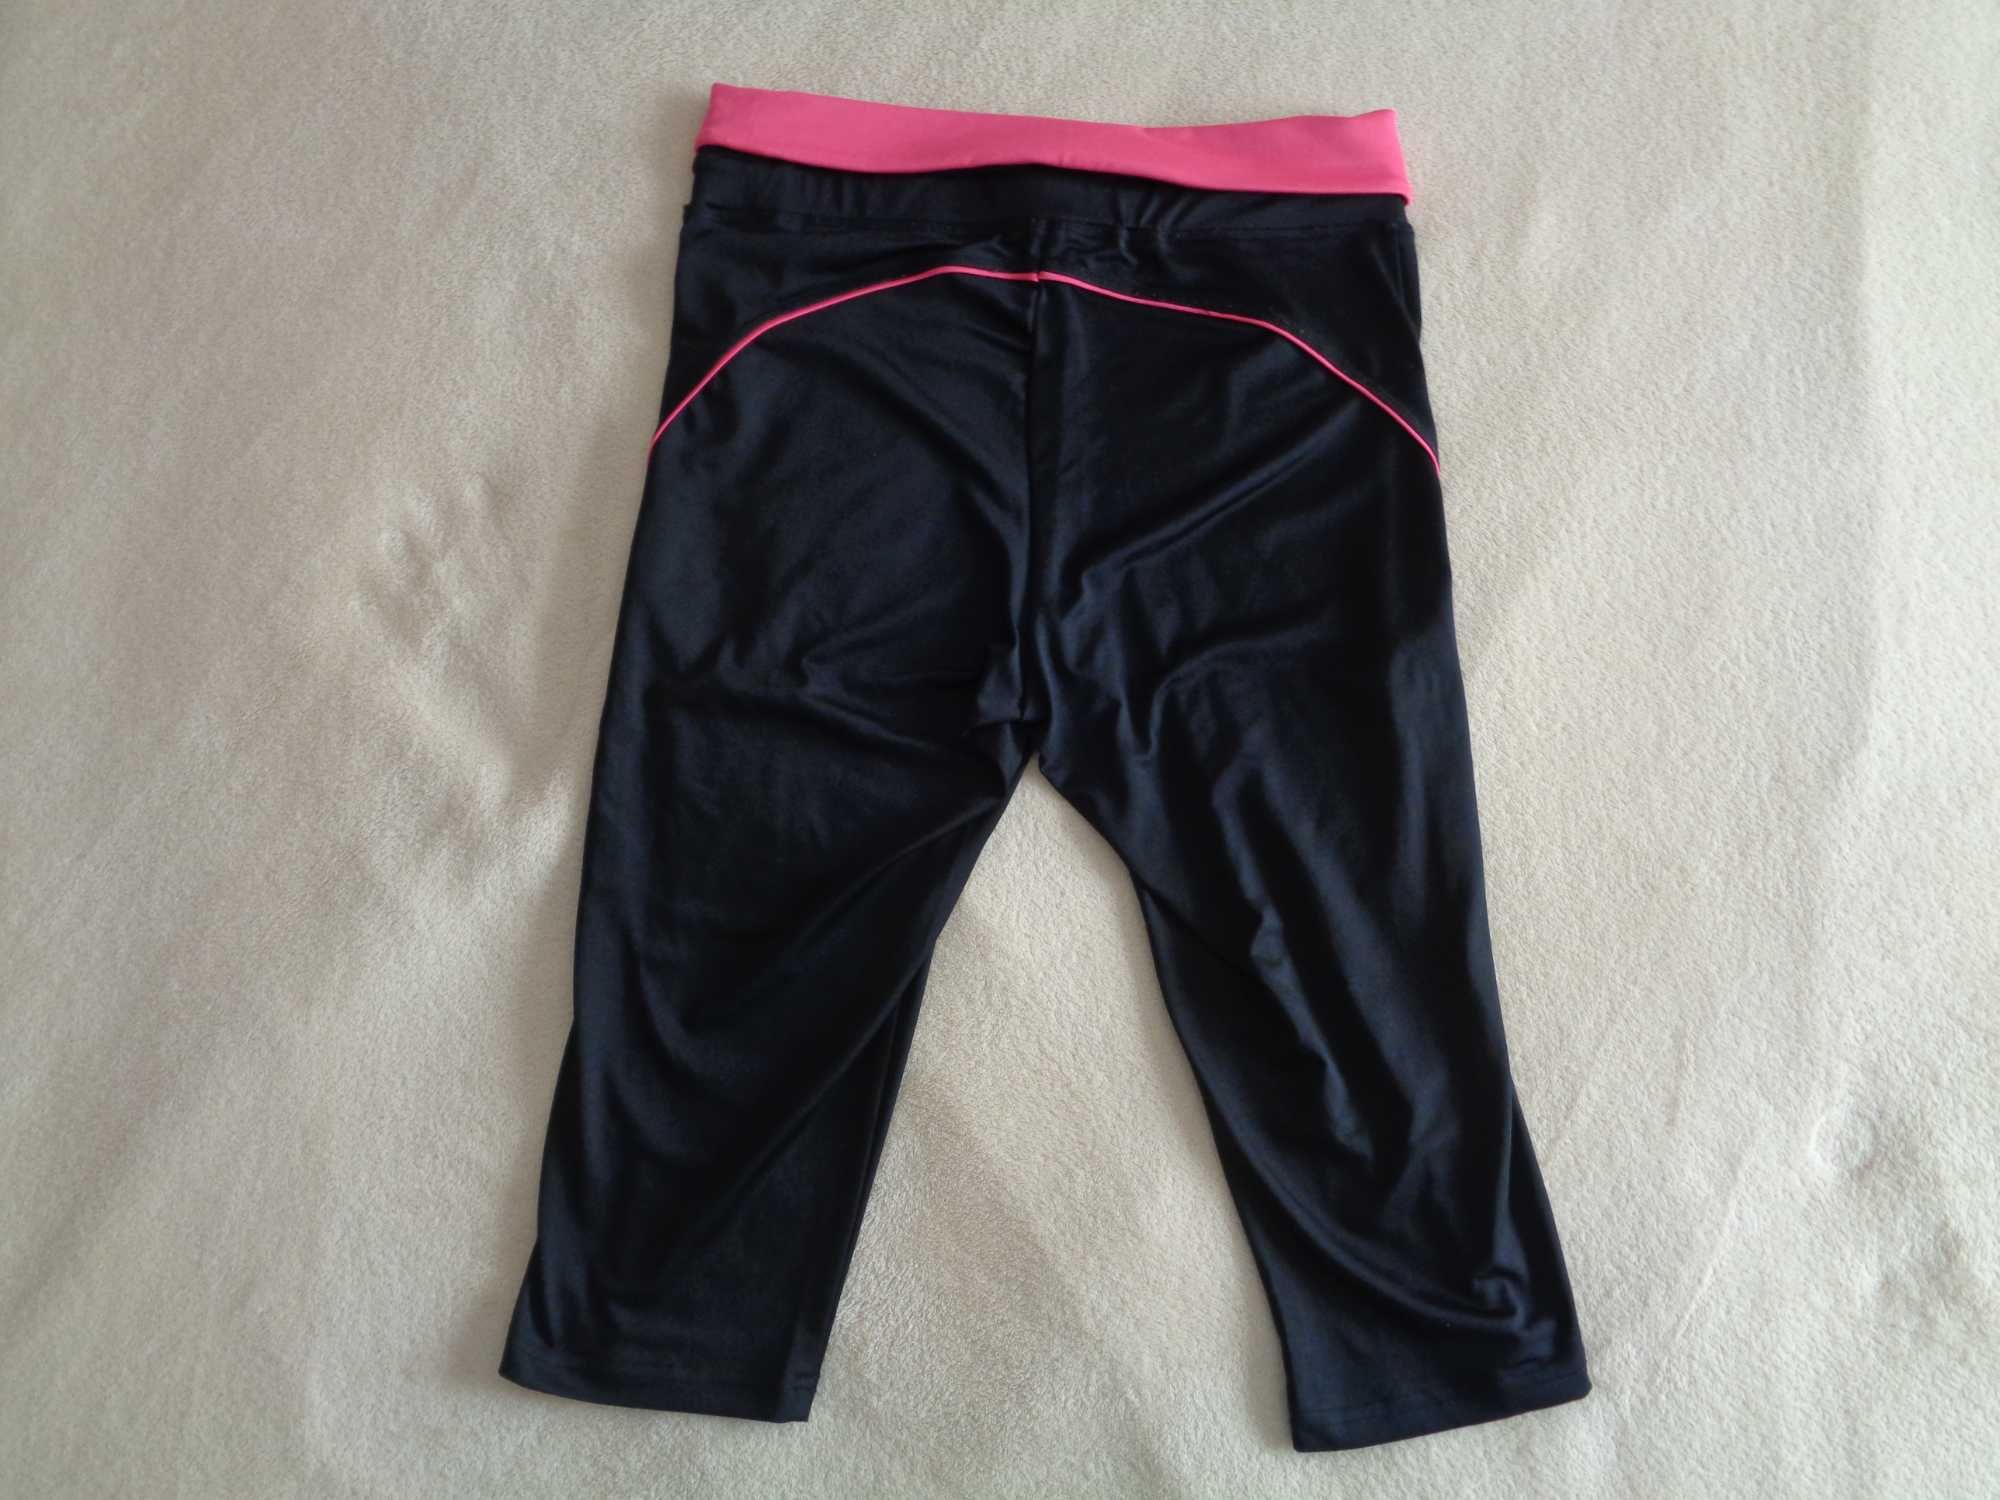 Leggings / calções de lycra pretas com faixa rosa - Tam. L